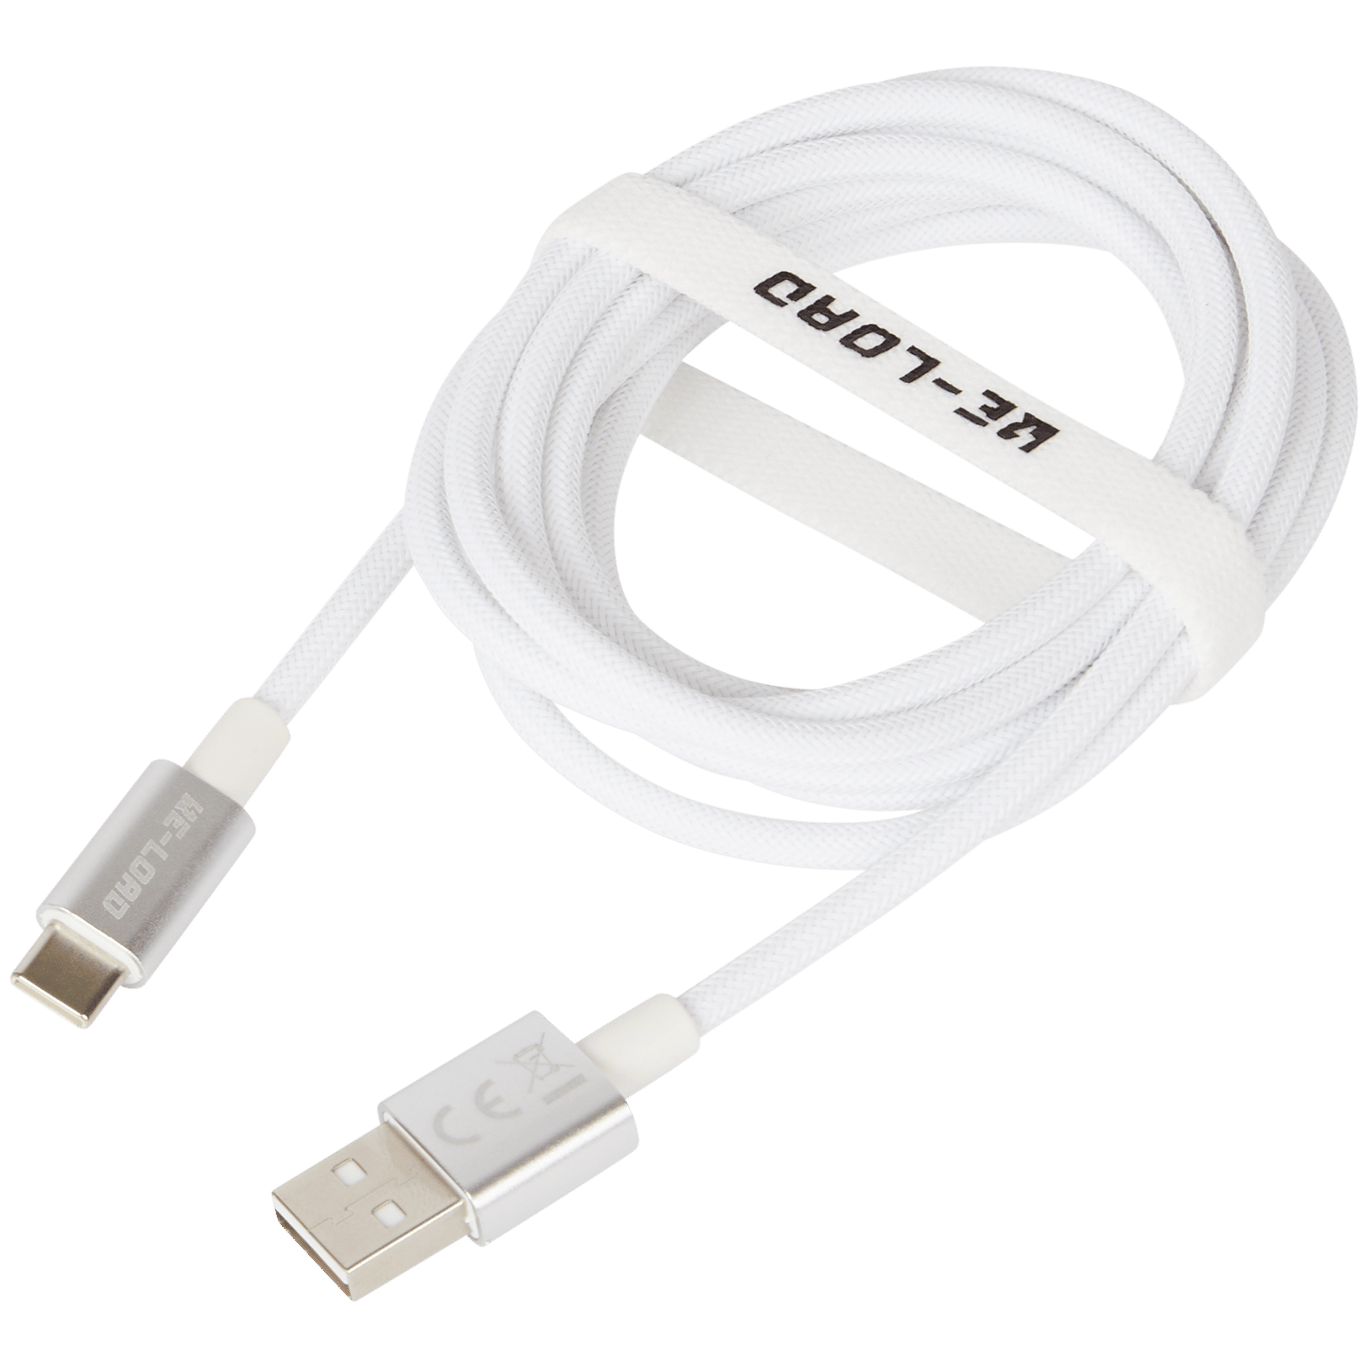 Dollar Oorzaak douche Re-load USB-A naar USB-C kabel | Action.com